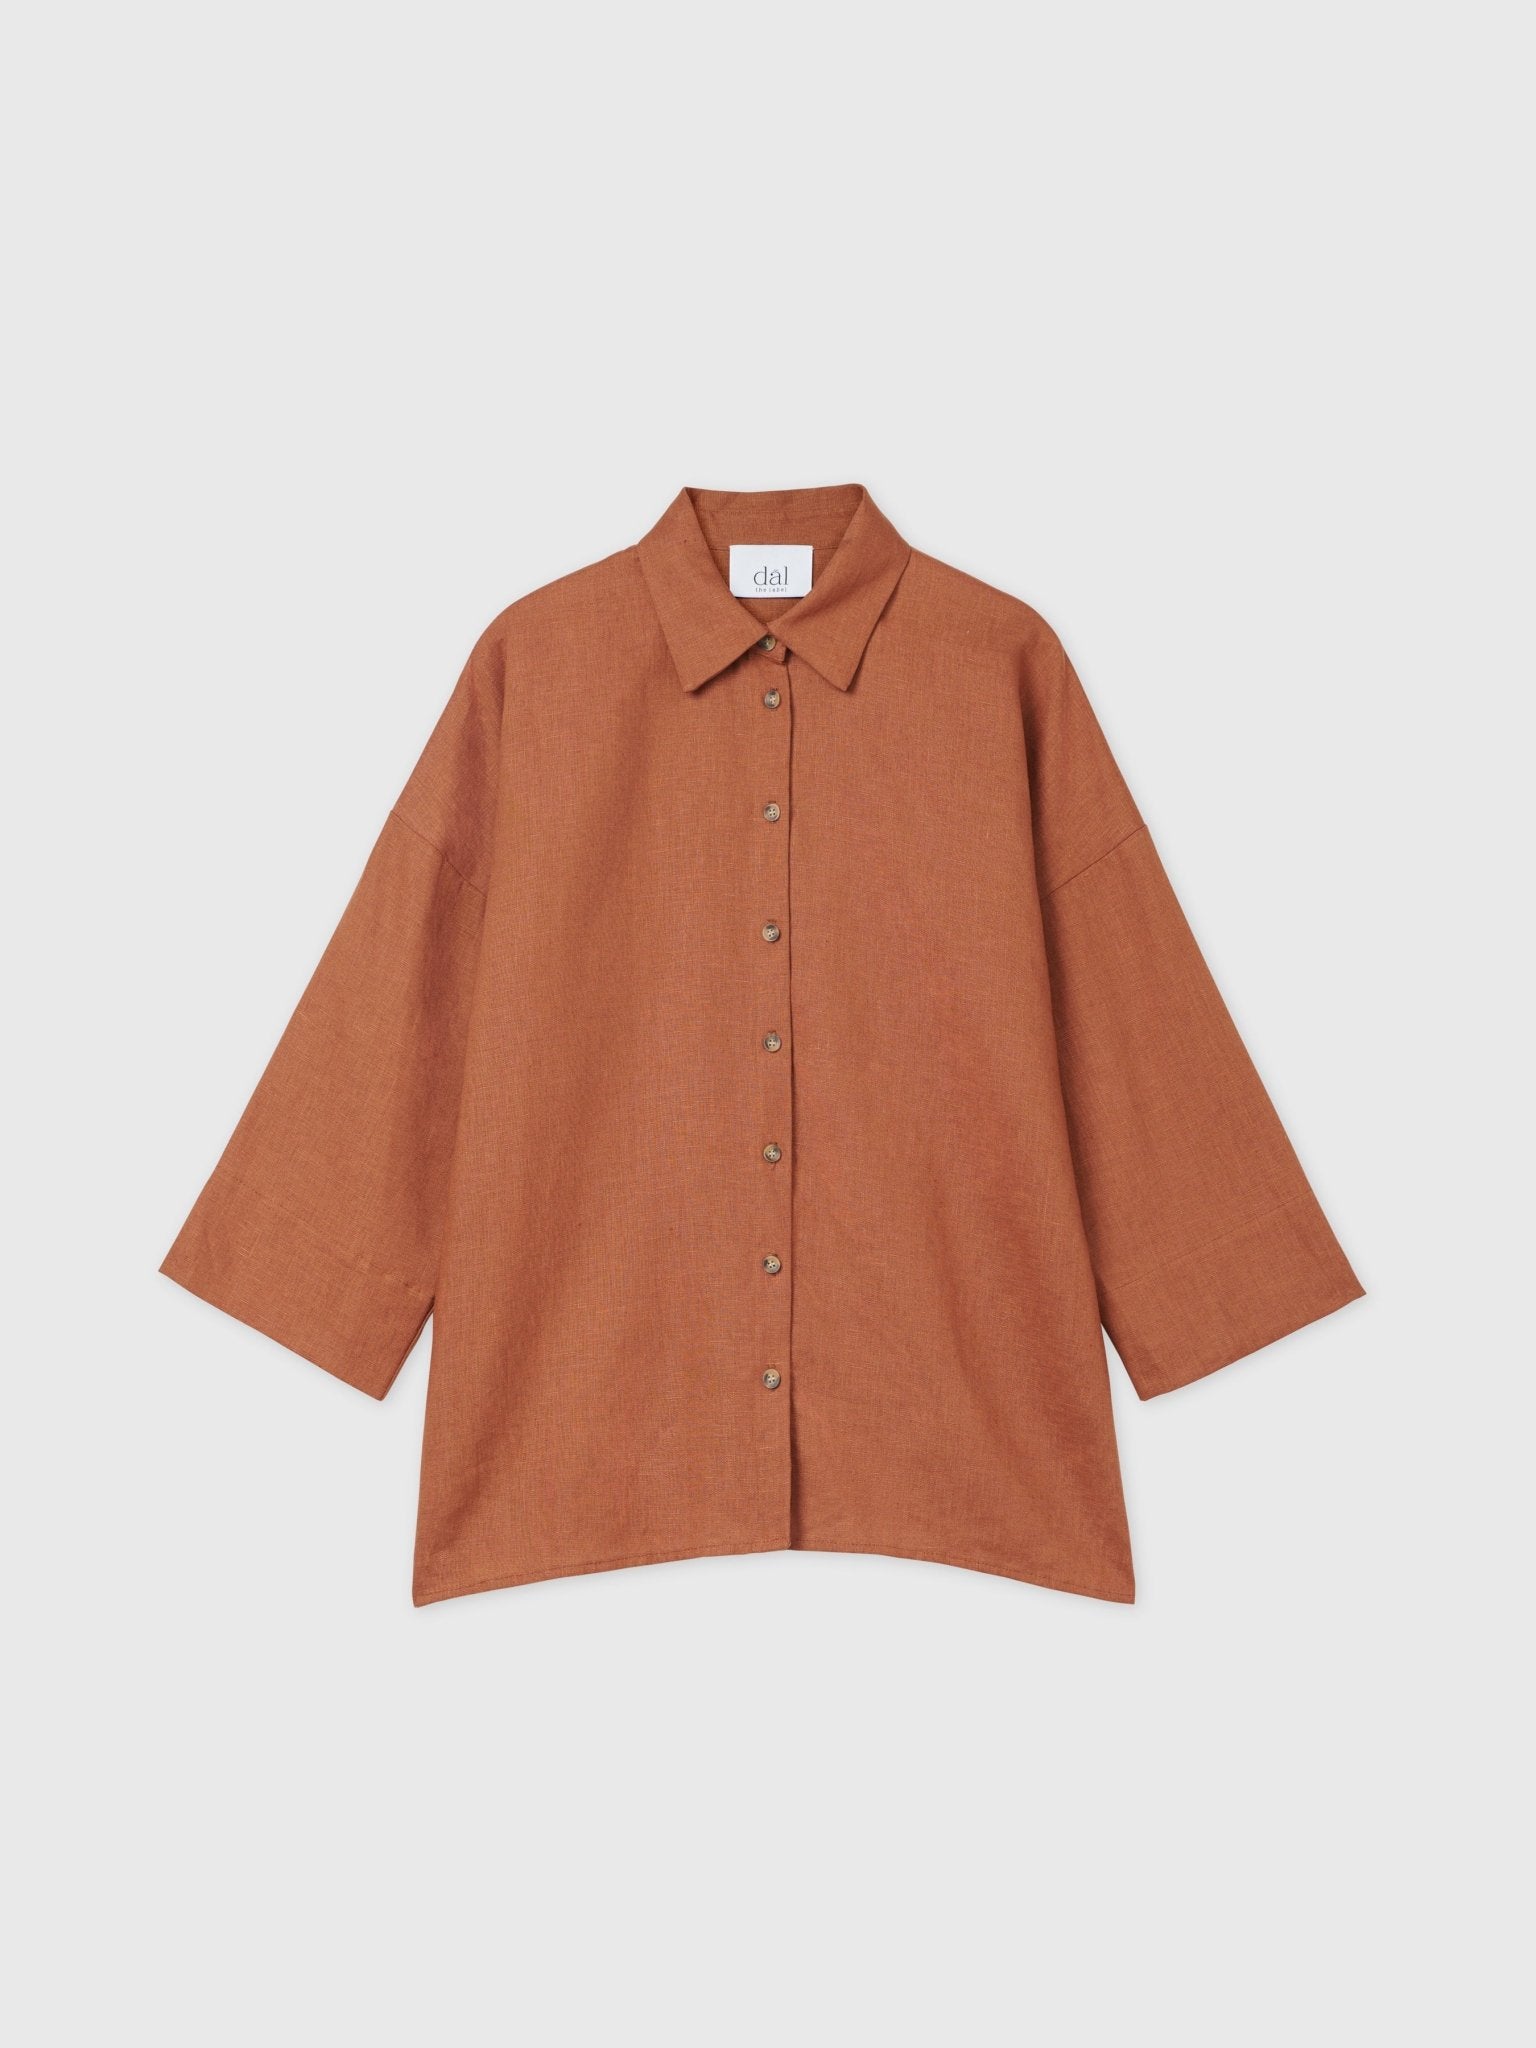 Linen Oversized Shirt - dāl the label-Terracotta